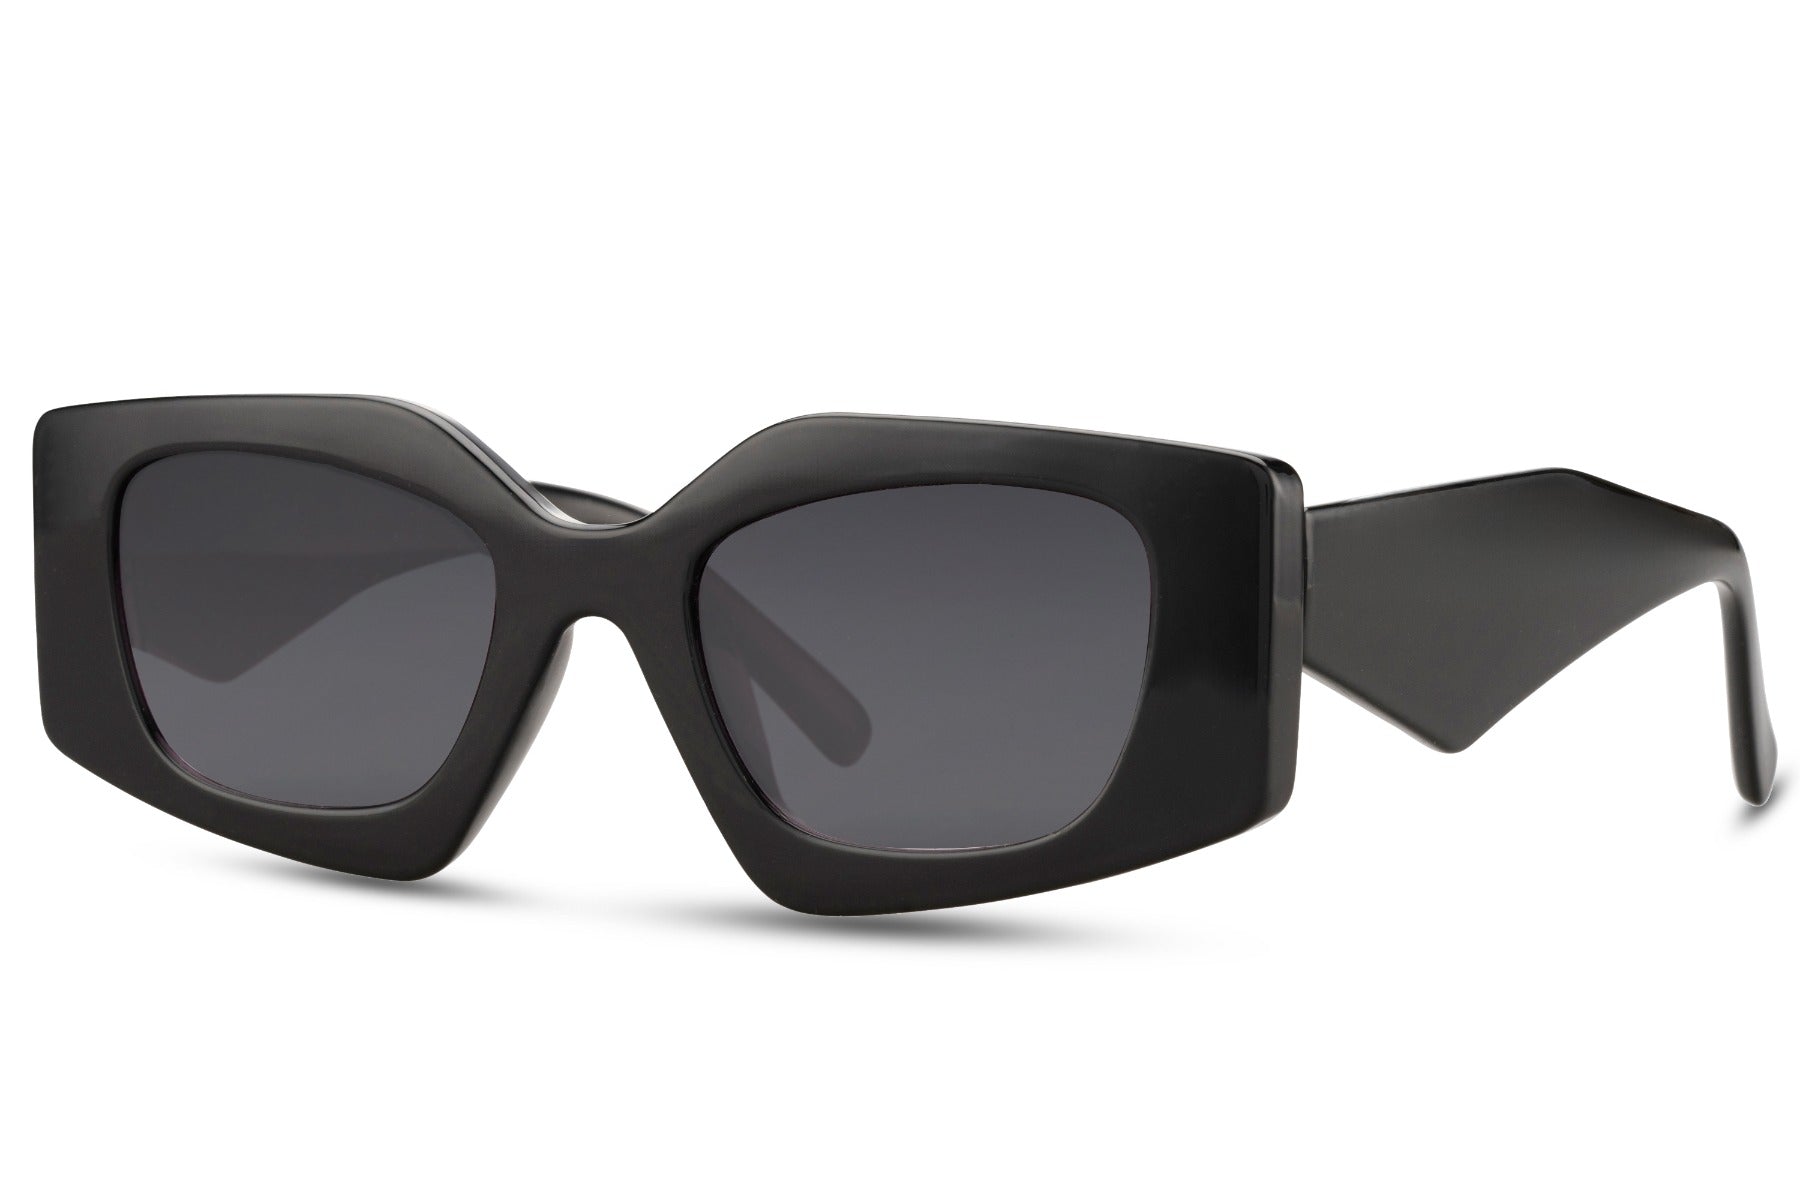 Black Rectangle Cat Eye Sunglasses for women